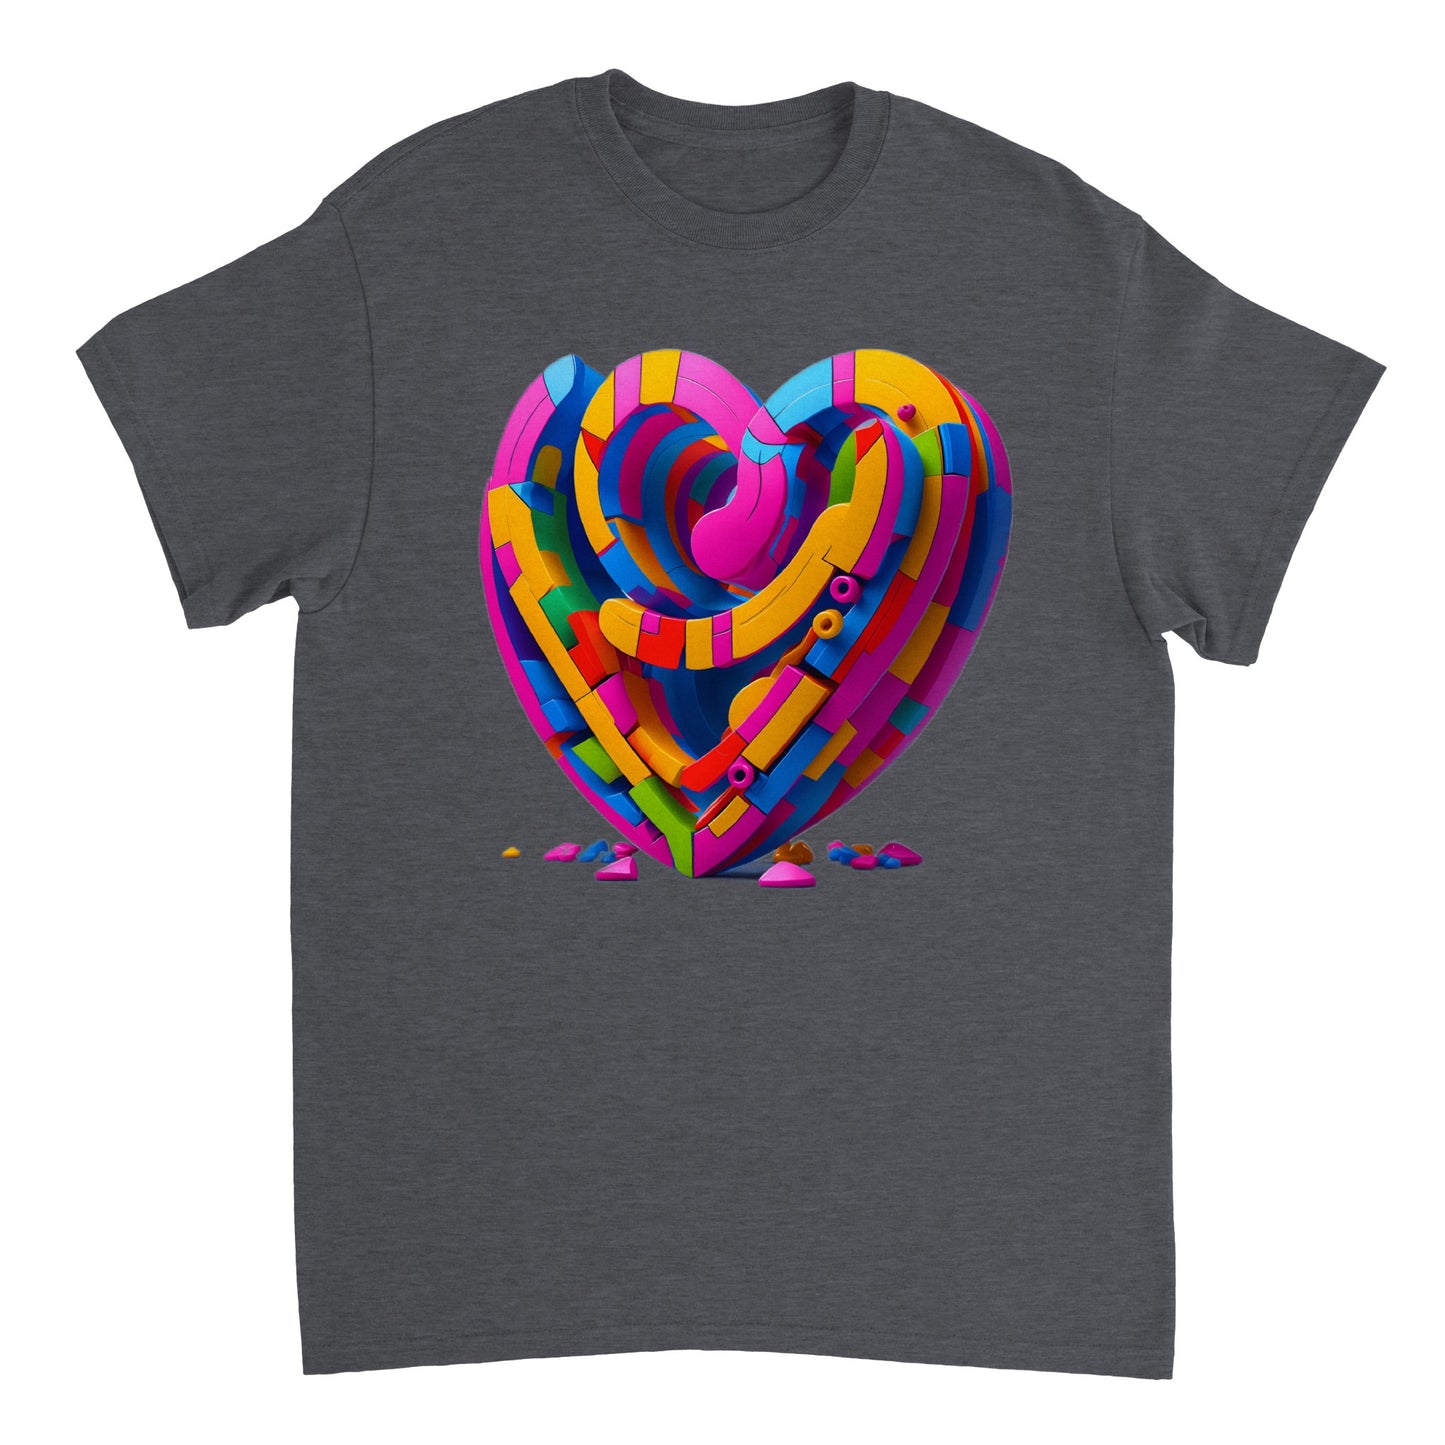 Love Heart - Heavyweight Unisex Crewneck T-shirt 19